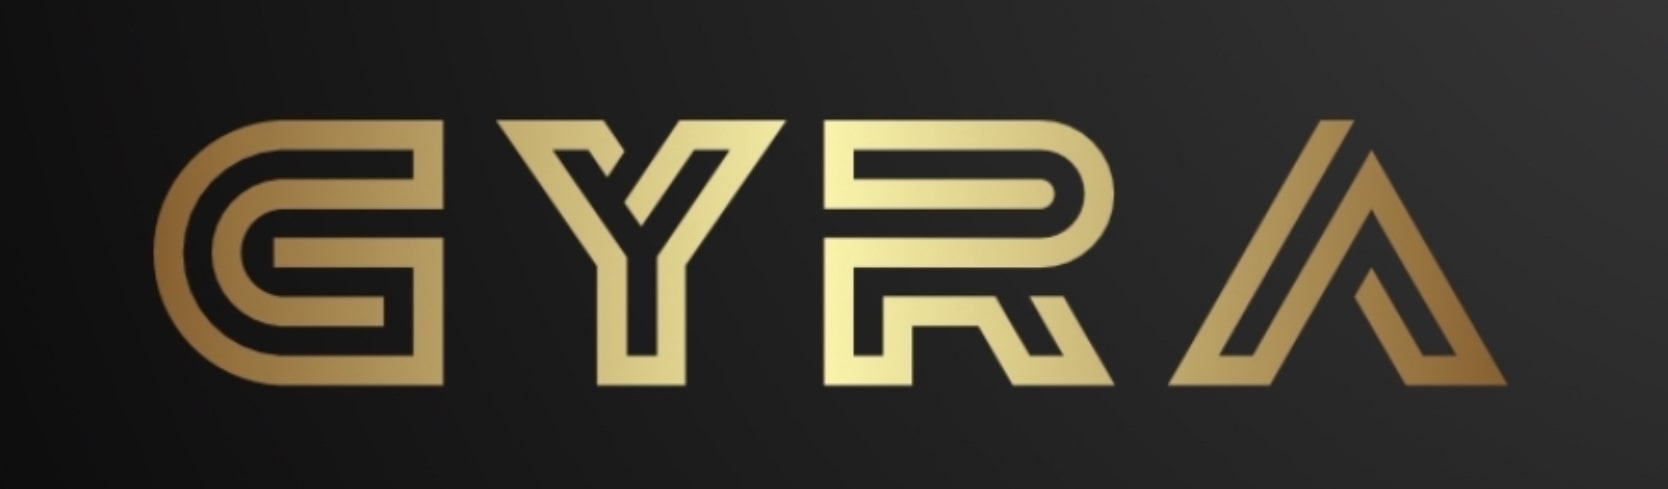 Gyra.co company logo